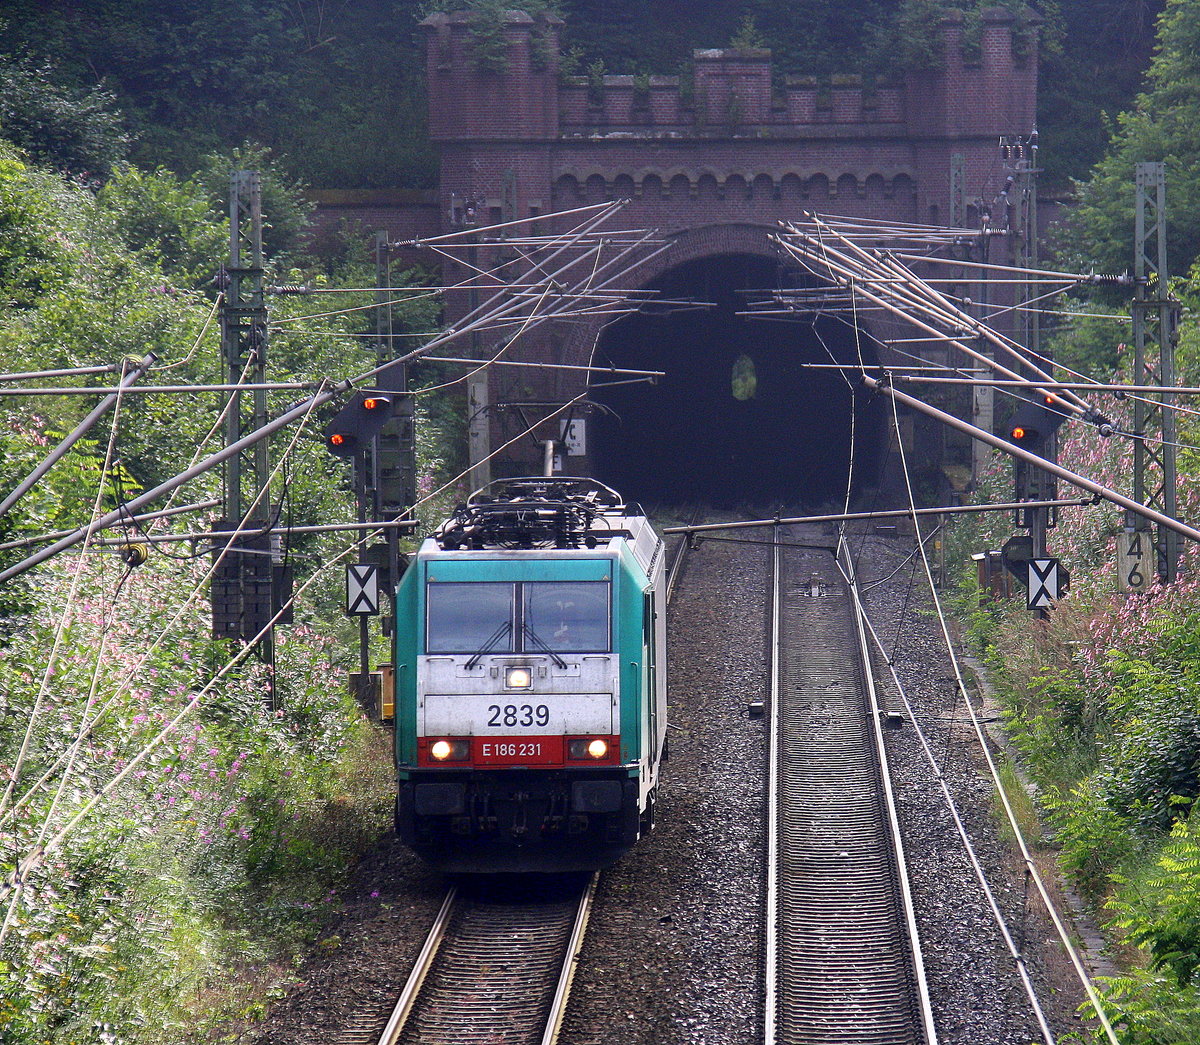 Die Cobra 2839 kommt als Lokzug aus Belgien nach Aachen-West und kam aus dem Gemmenicher-Tunnel und fährt die Gemmenicher-Rampe herunter nach Aachen-West. Aufgenommen bei Reinartzkehl an der Montzenroute.
Am Abend vom 8.8.2016.